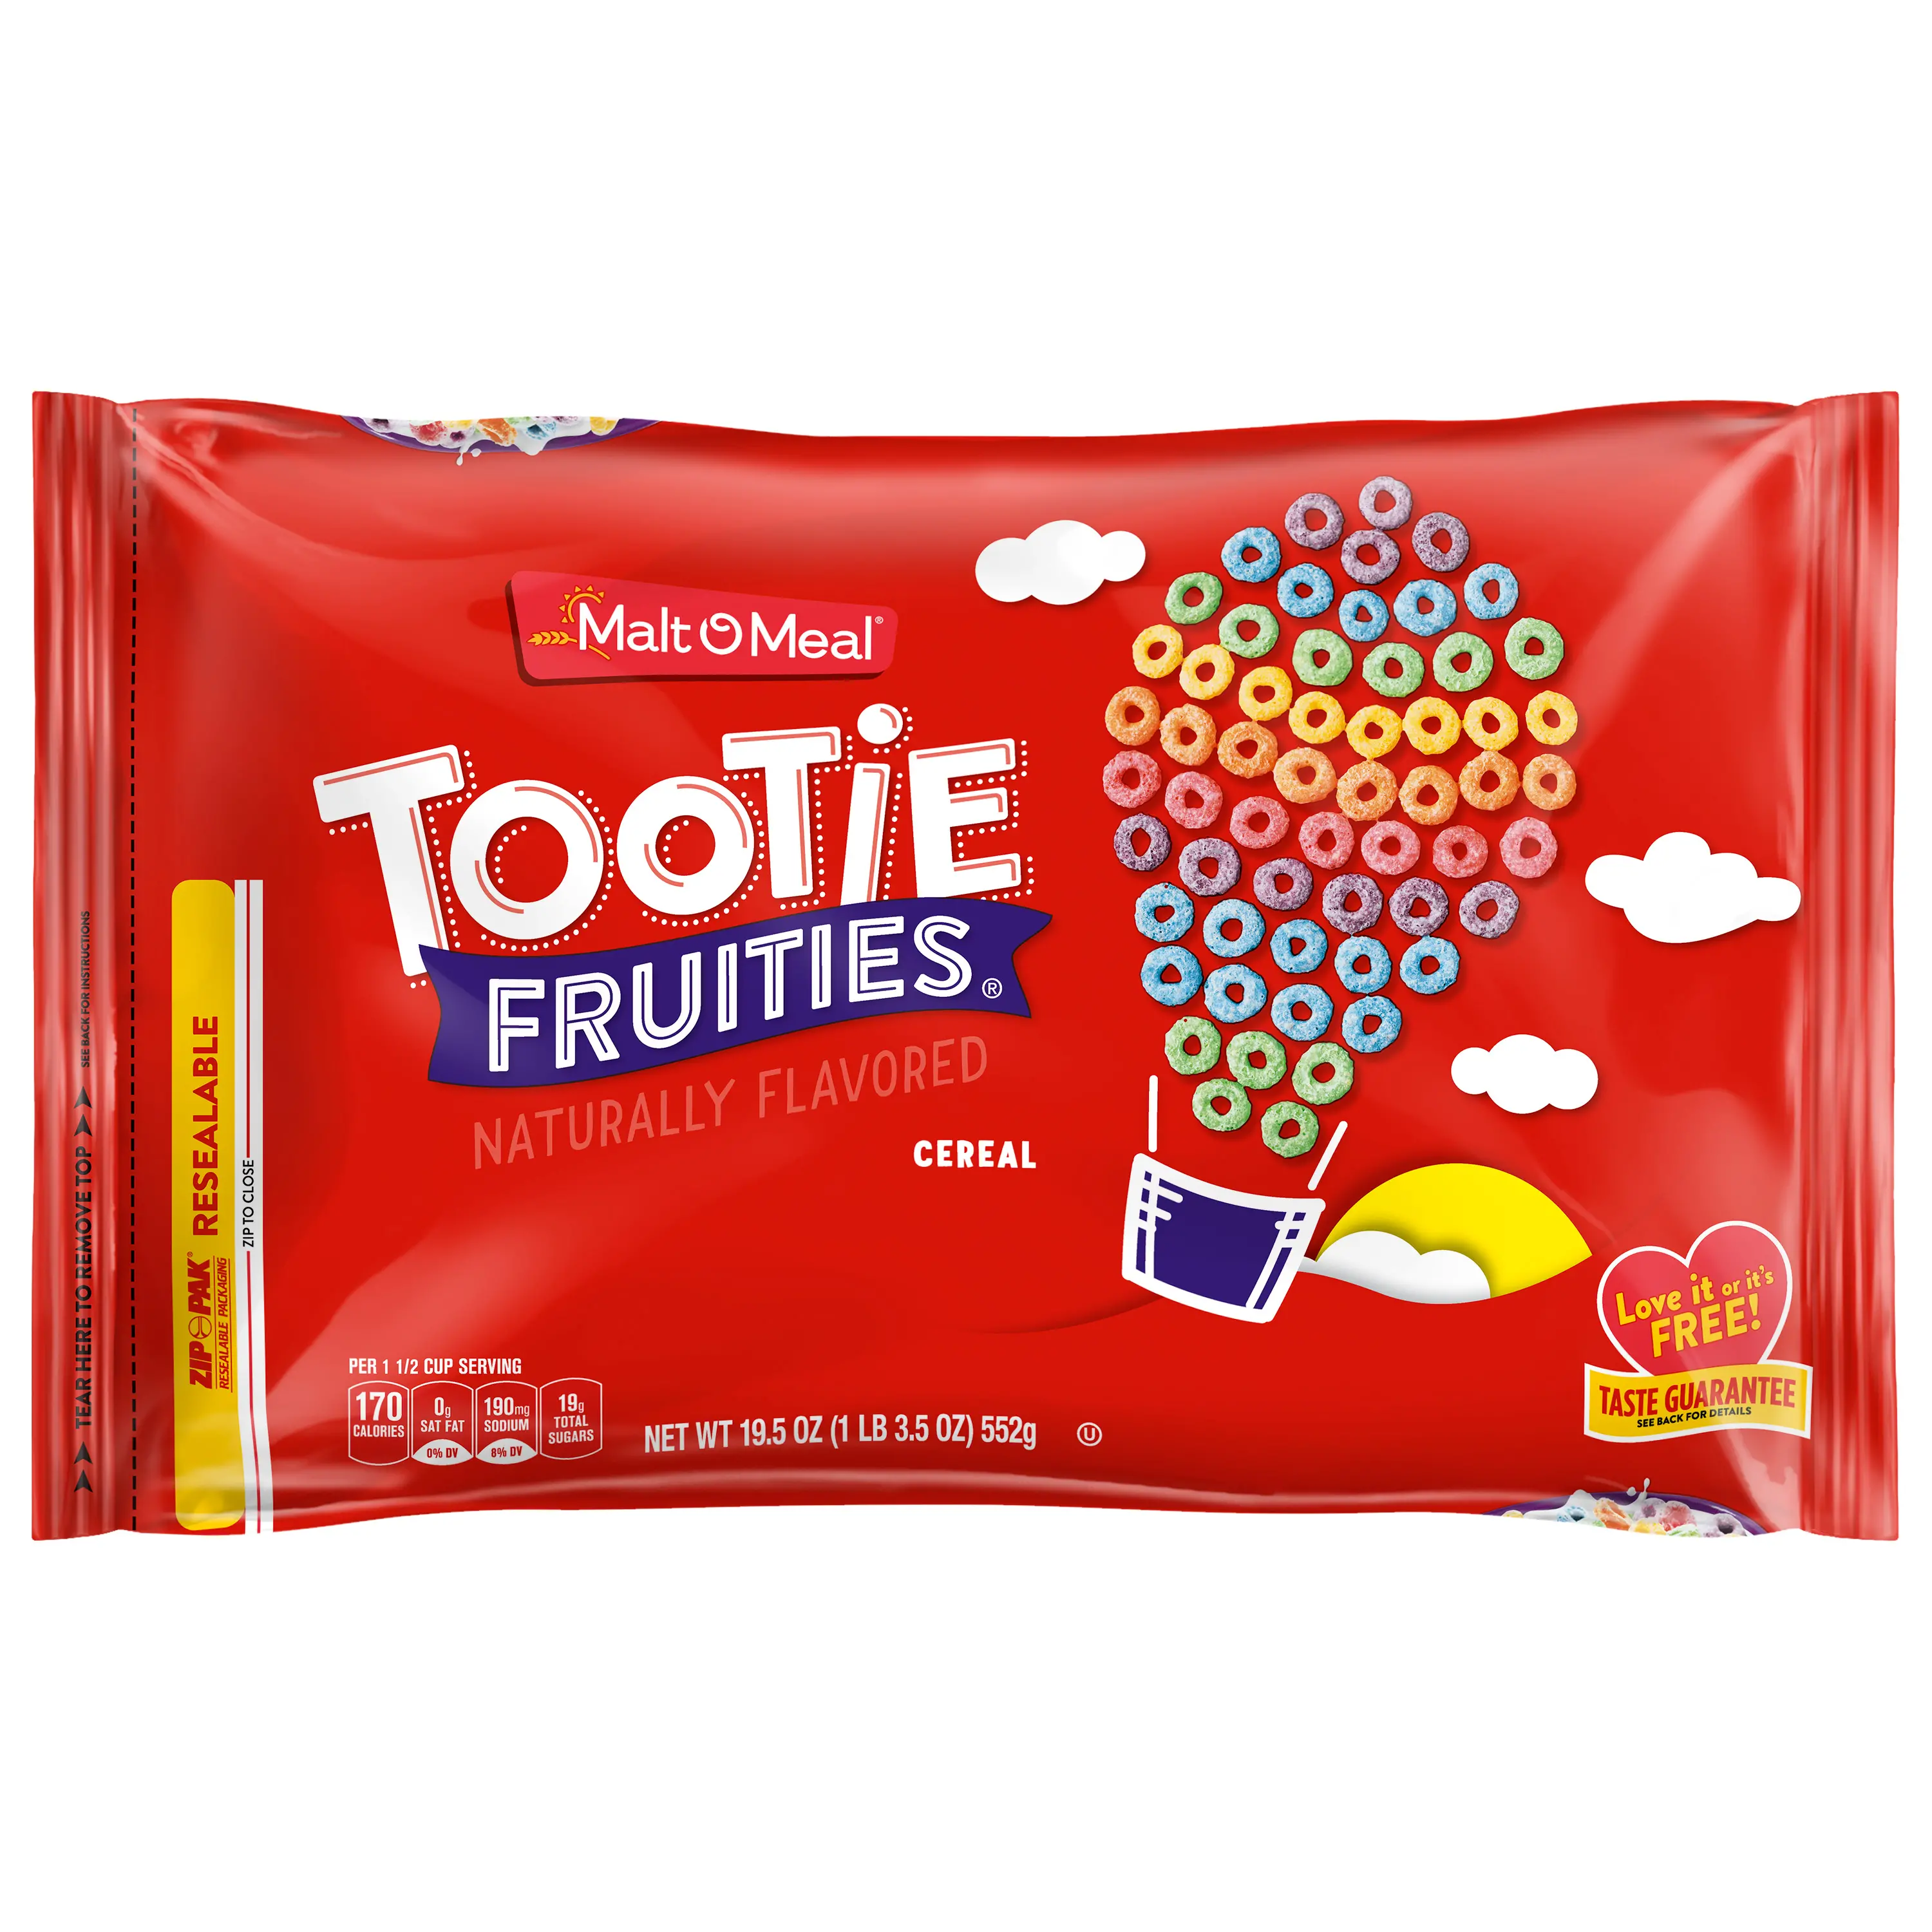 Tootie Fruits cereal